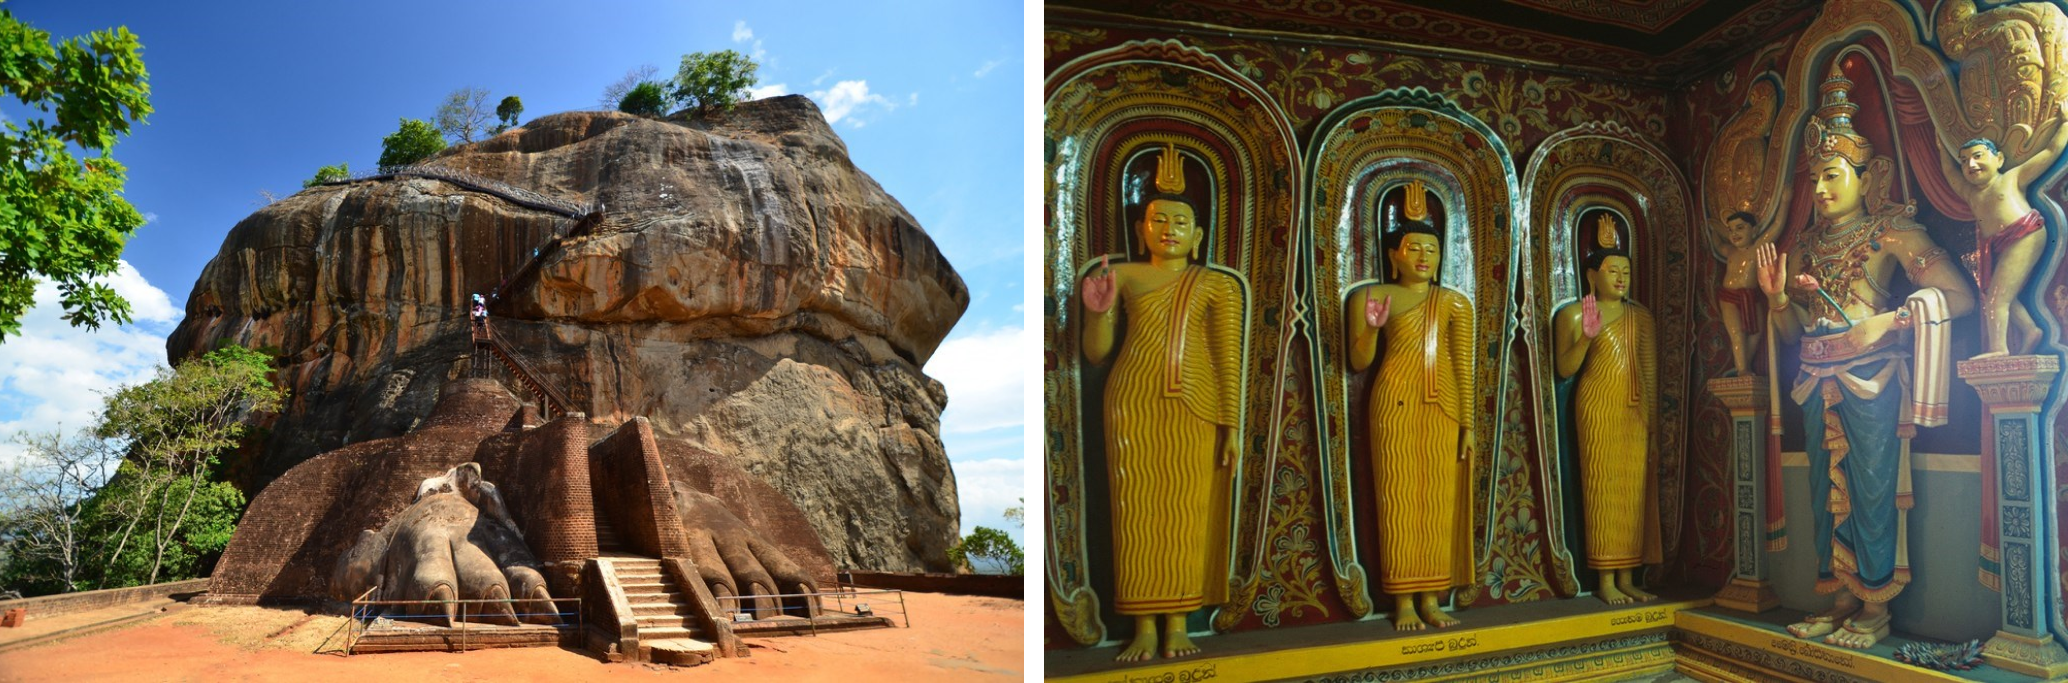 Srí Lanka - Historická krása